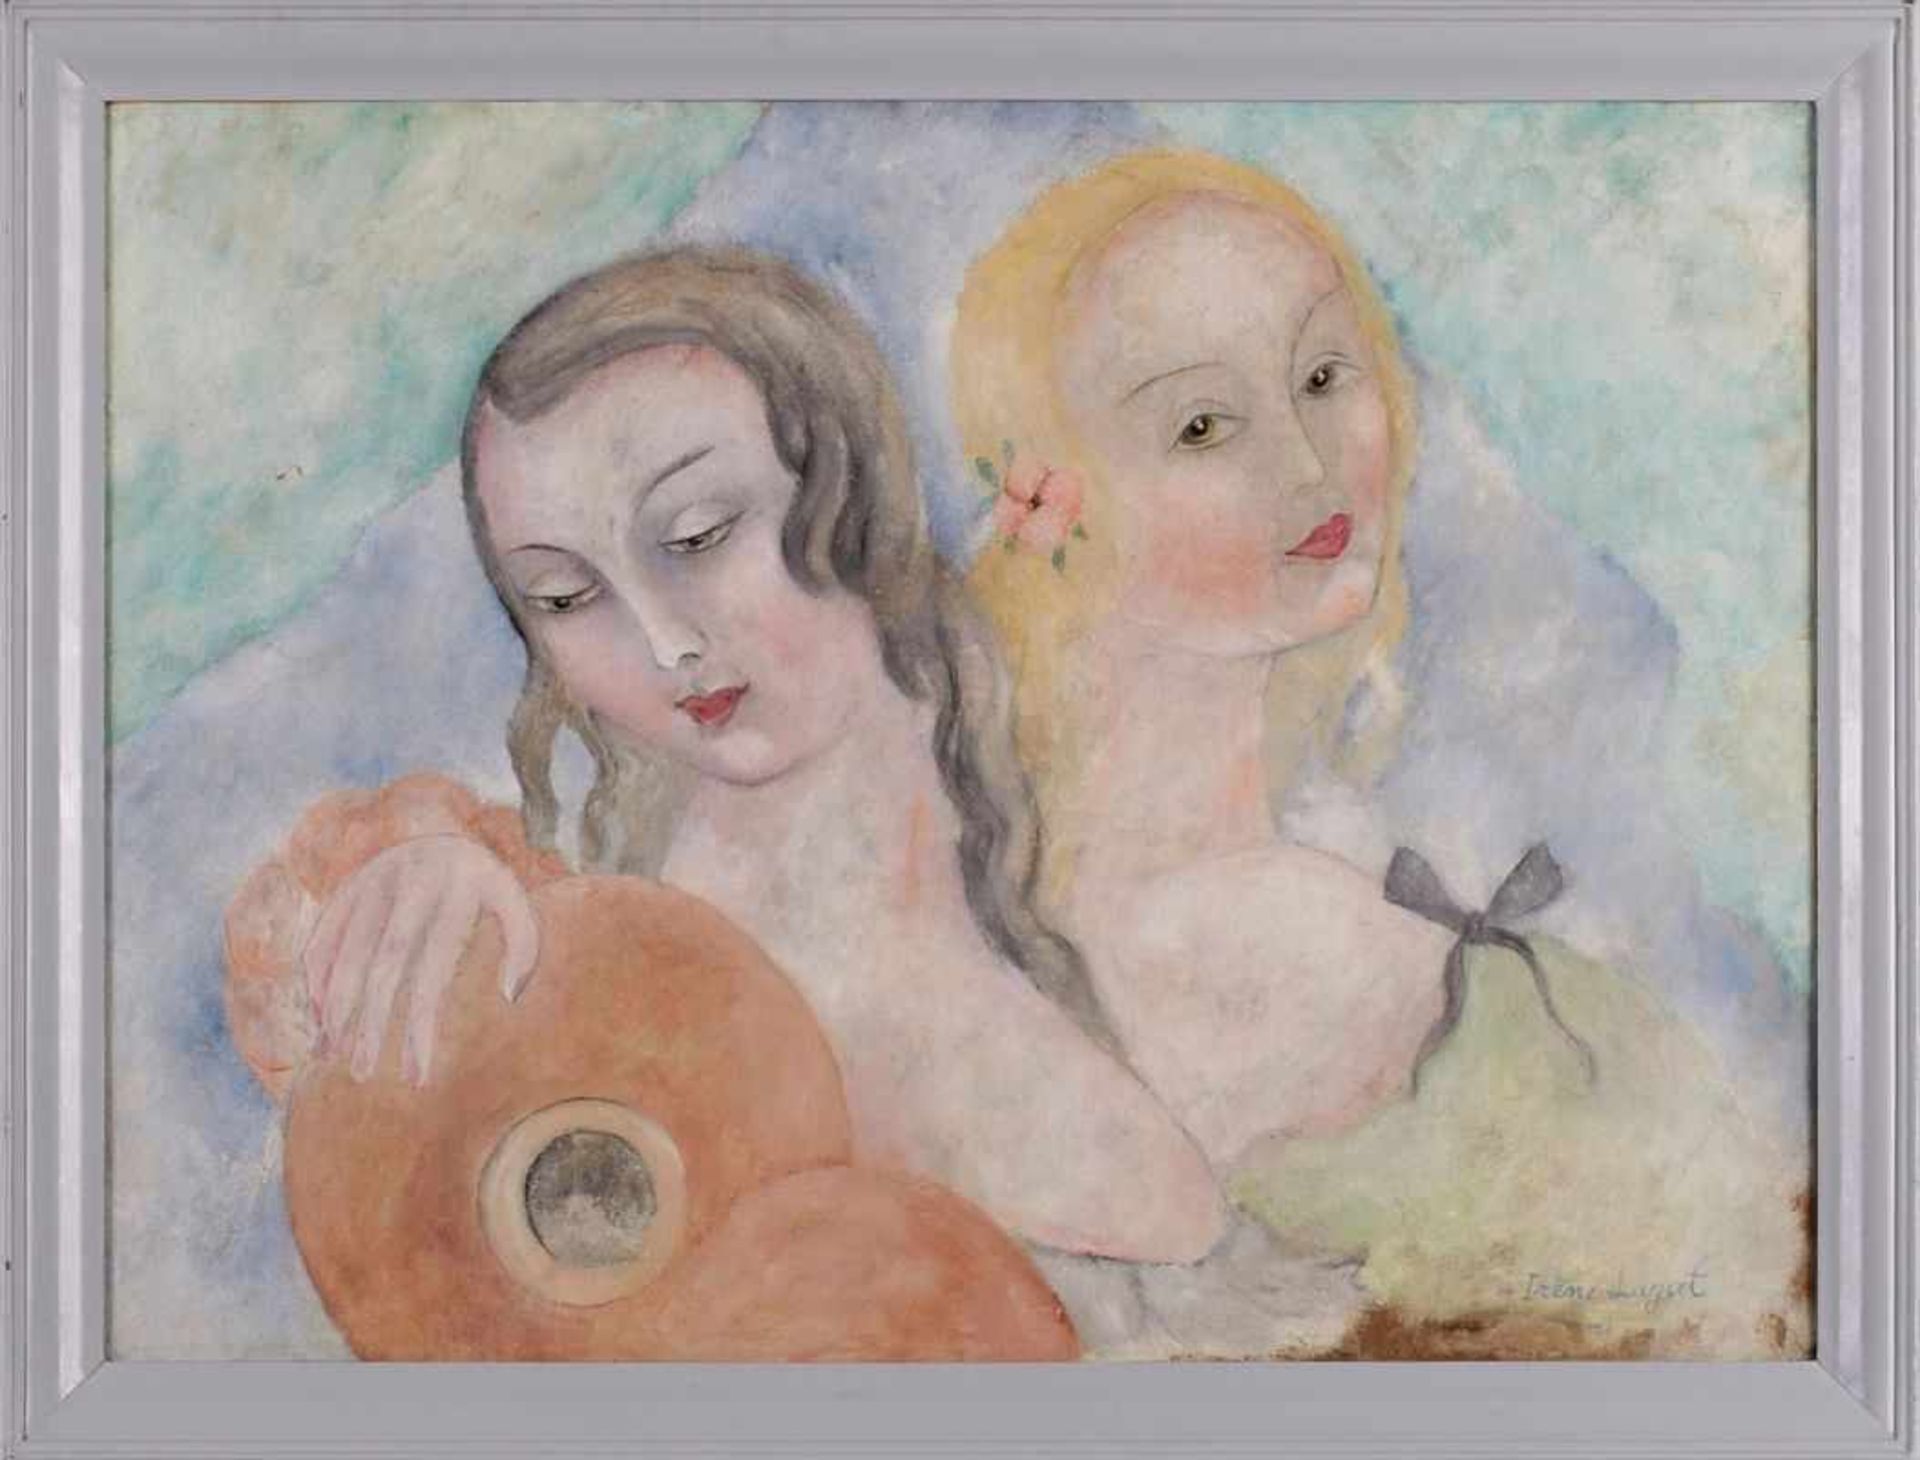 Gemälde Irène Lagut1893 Paris - 1994 Menton Schülerin von Picasso. Stellte ab 1920 bei den